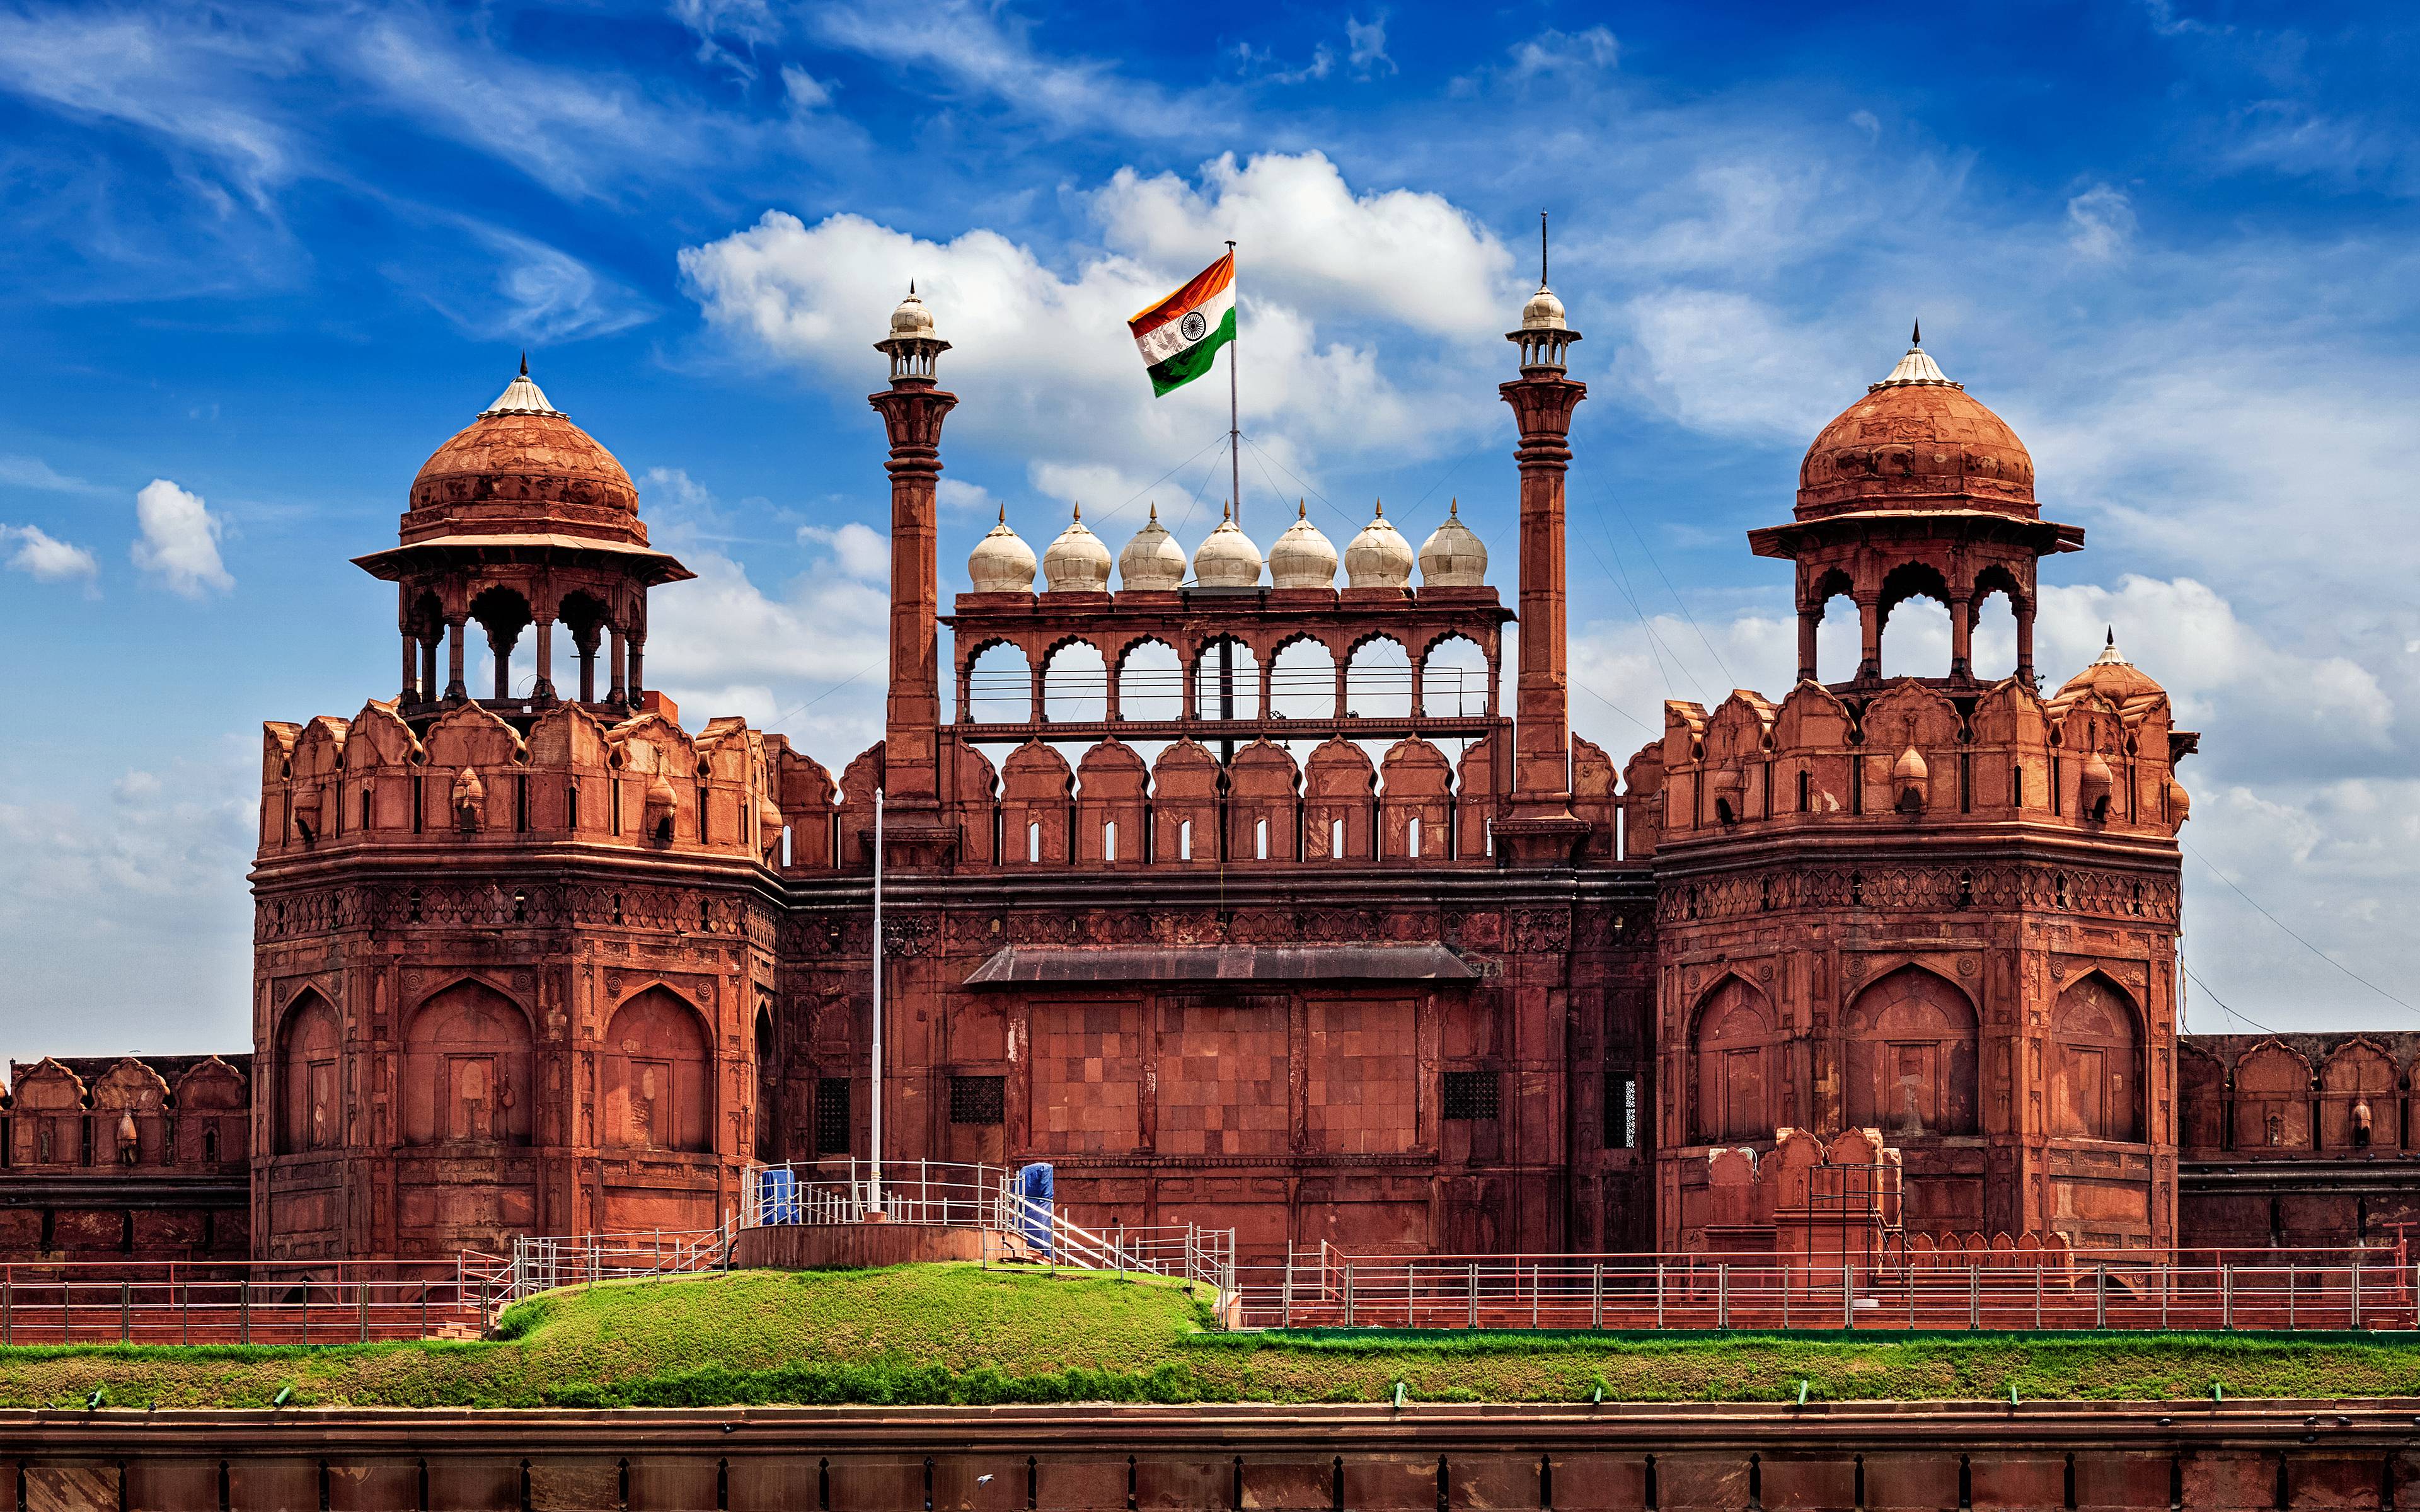 Agra, gemma dell'architettura Moghul